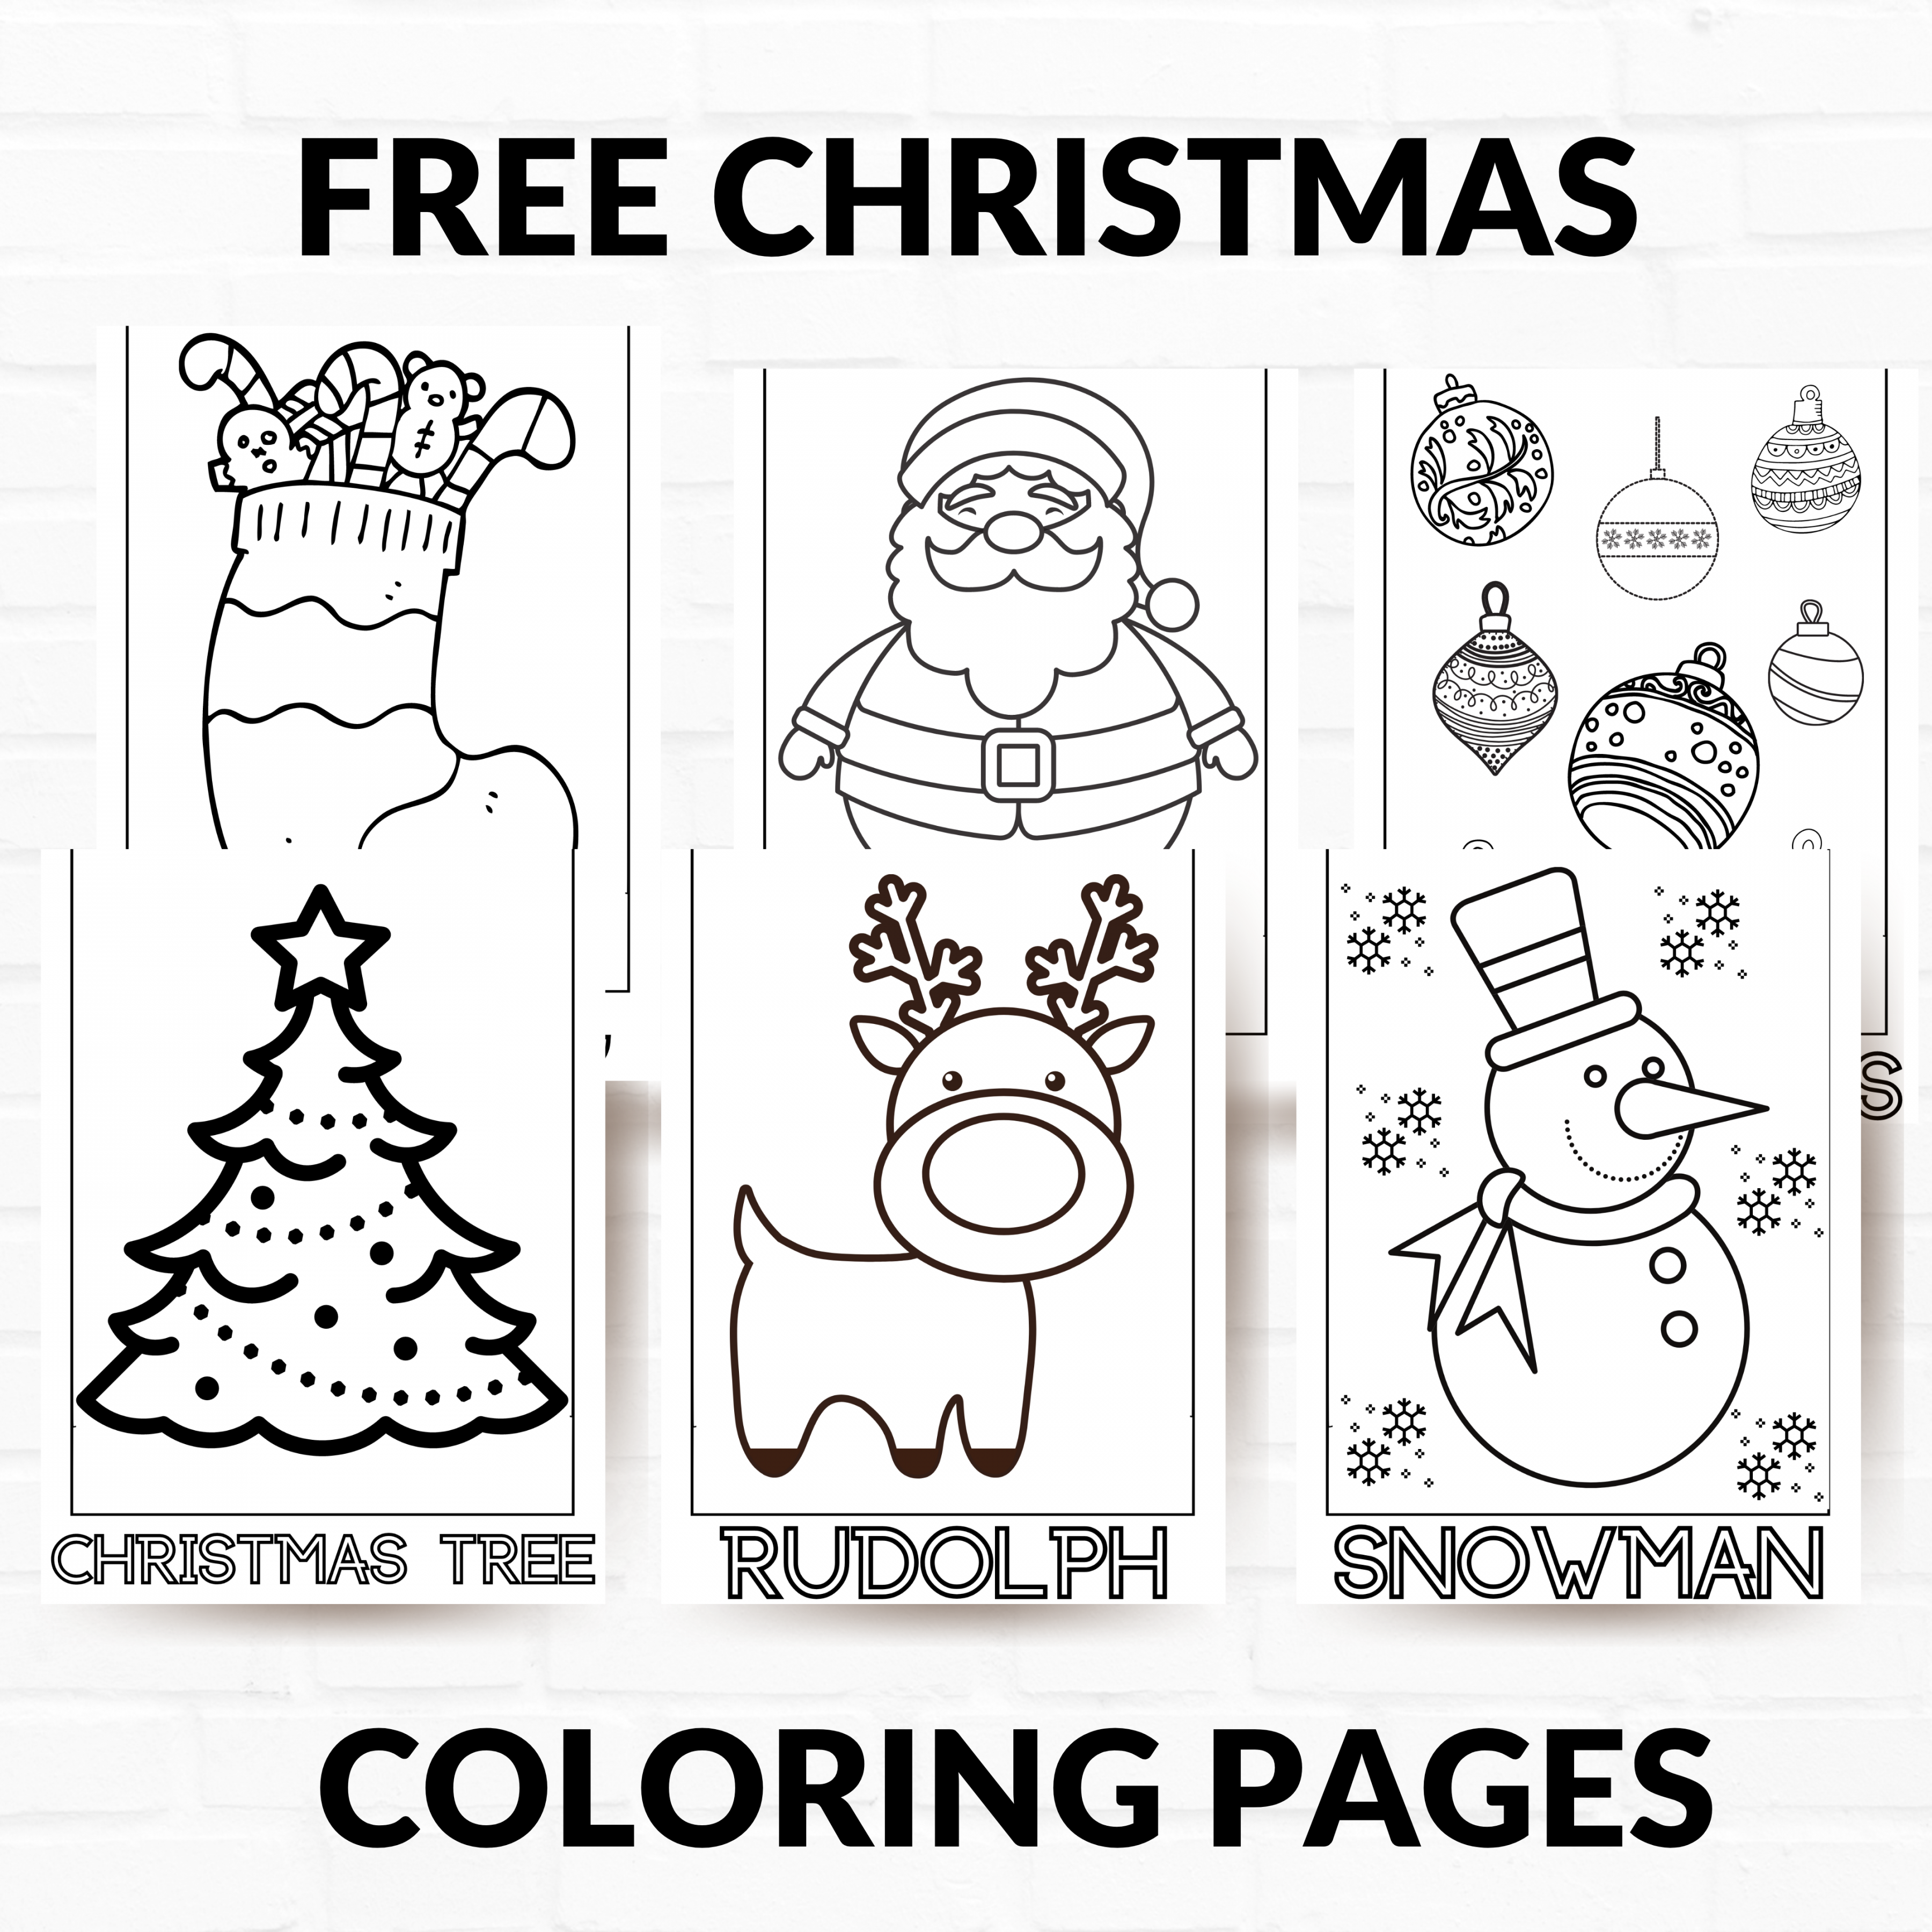 Free Printable Christmas Images - Printable - Free Printable Christmas Coloring Pages - About a Mom